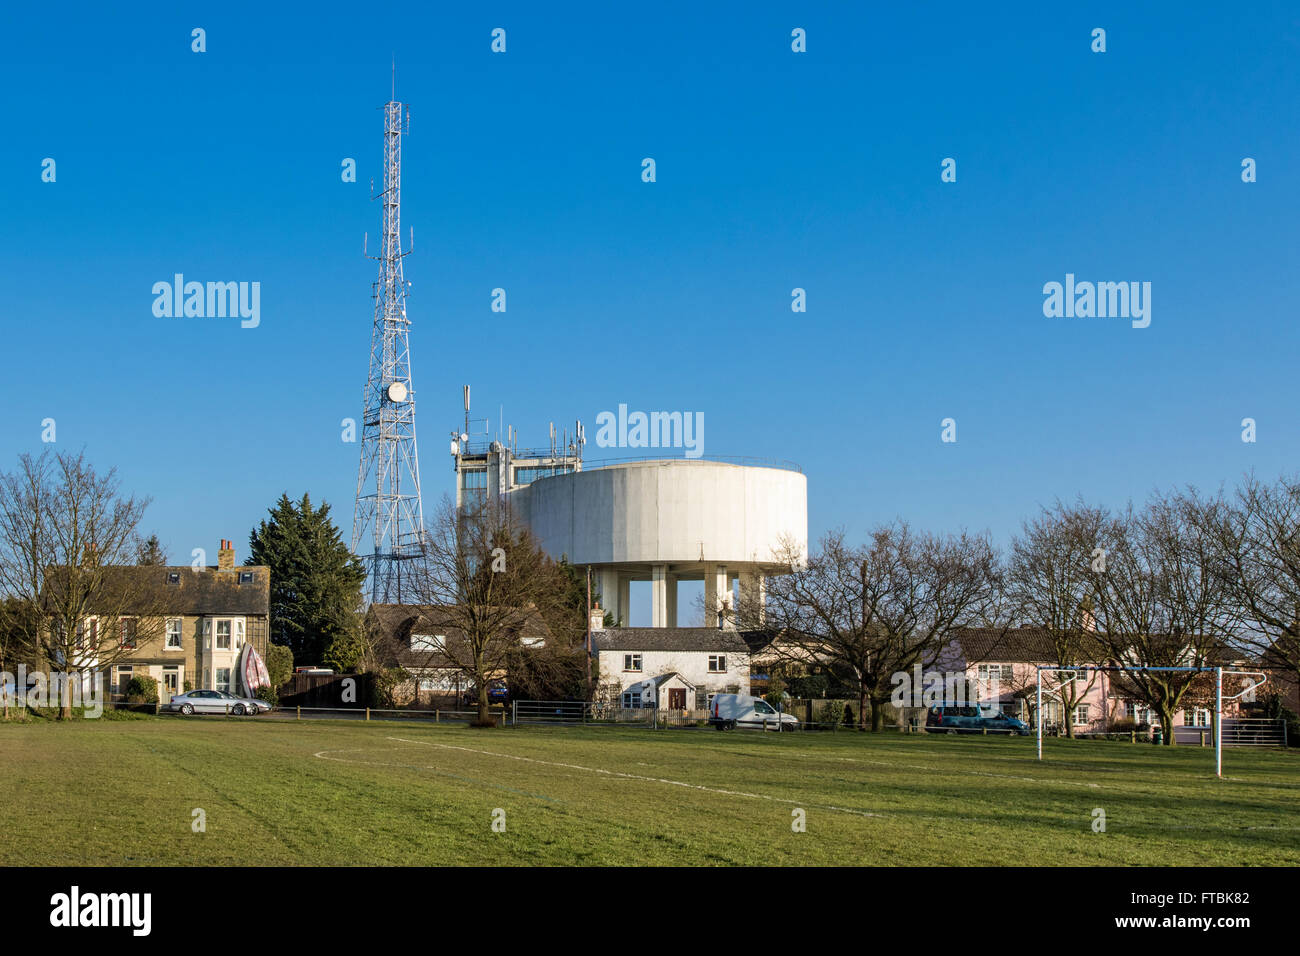 View of radio mast and water tower in Haddenham, Cambridgeshire Stock Photo